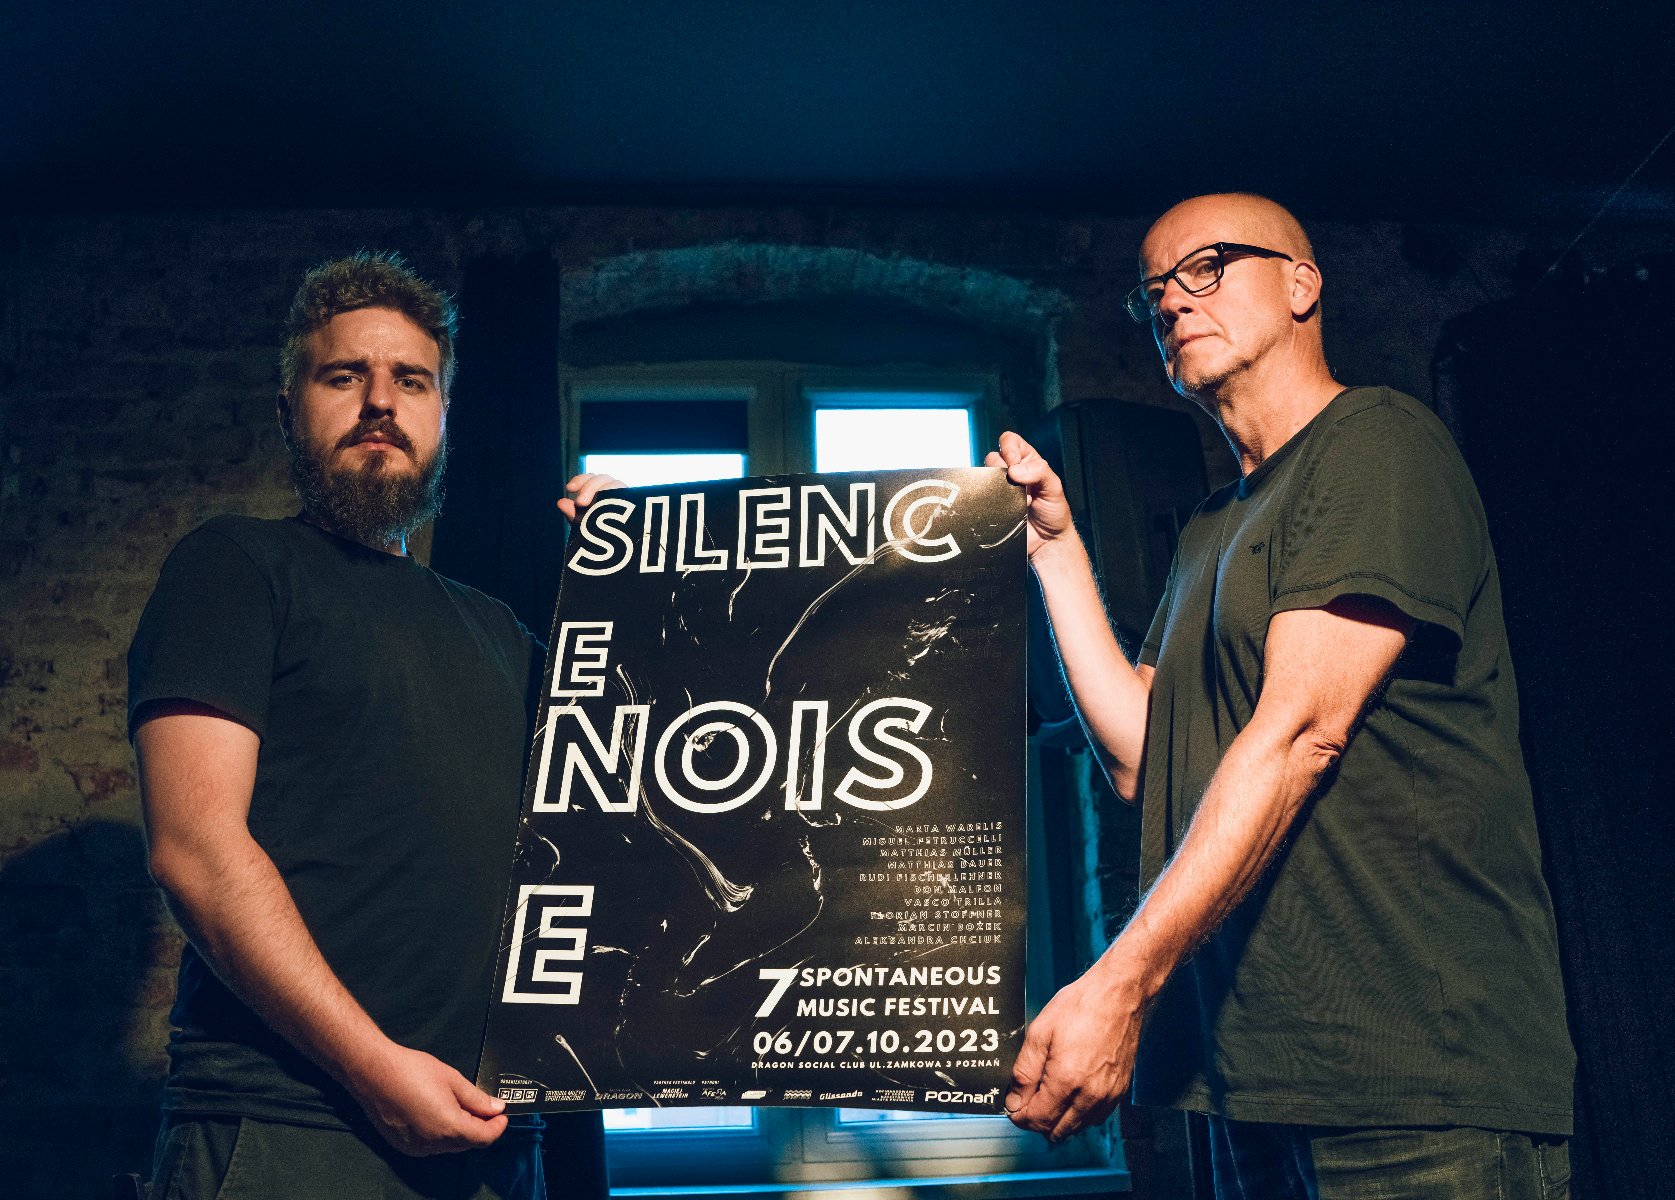 Dwóch mężczyzn trzyma plakat reklamujący festiwal z napisem "Silence. Noise". - grafika artykułu